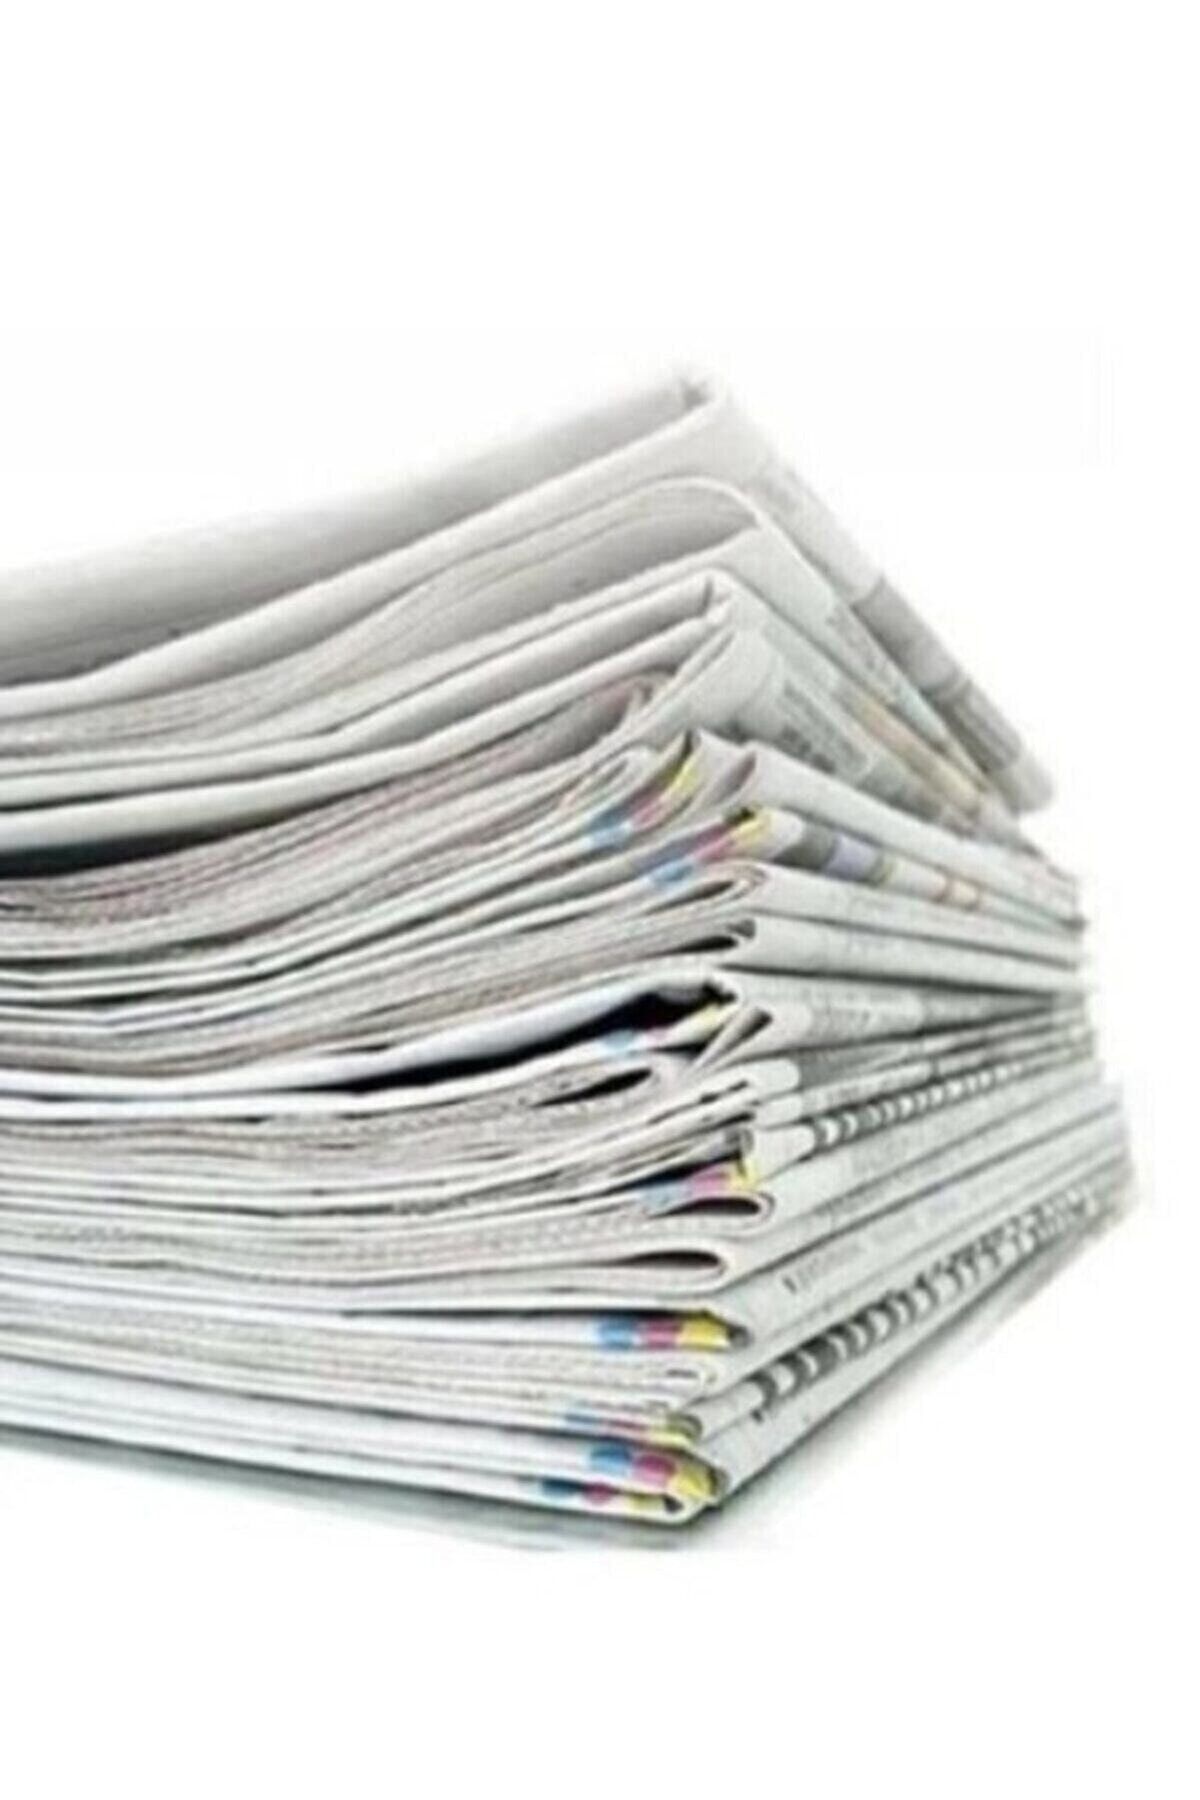 Mçb Group Eski Gazete 1 Kg Taşınma Gazetesi Temiz Gazete Kağıdı Kağıt Gazete